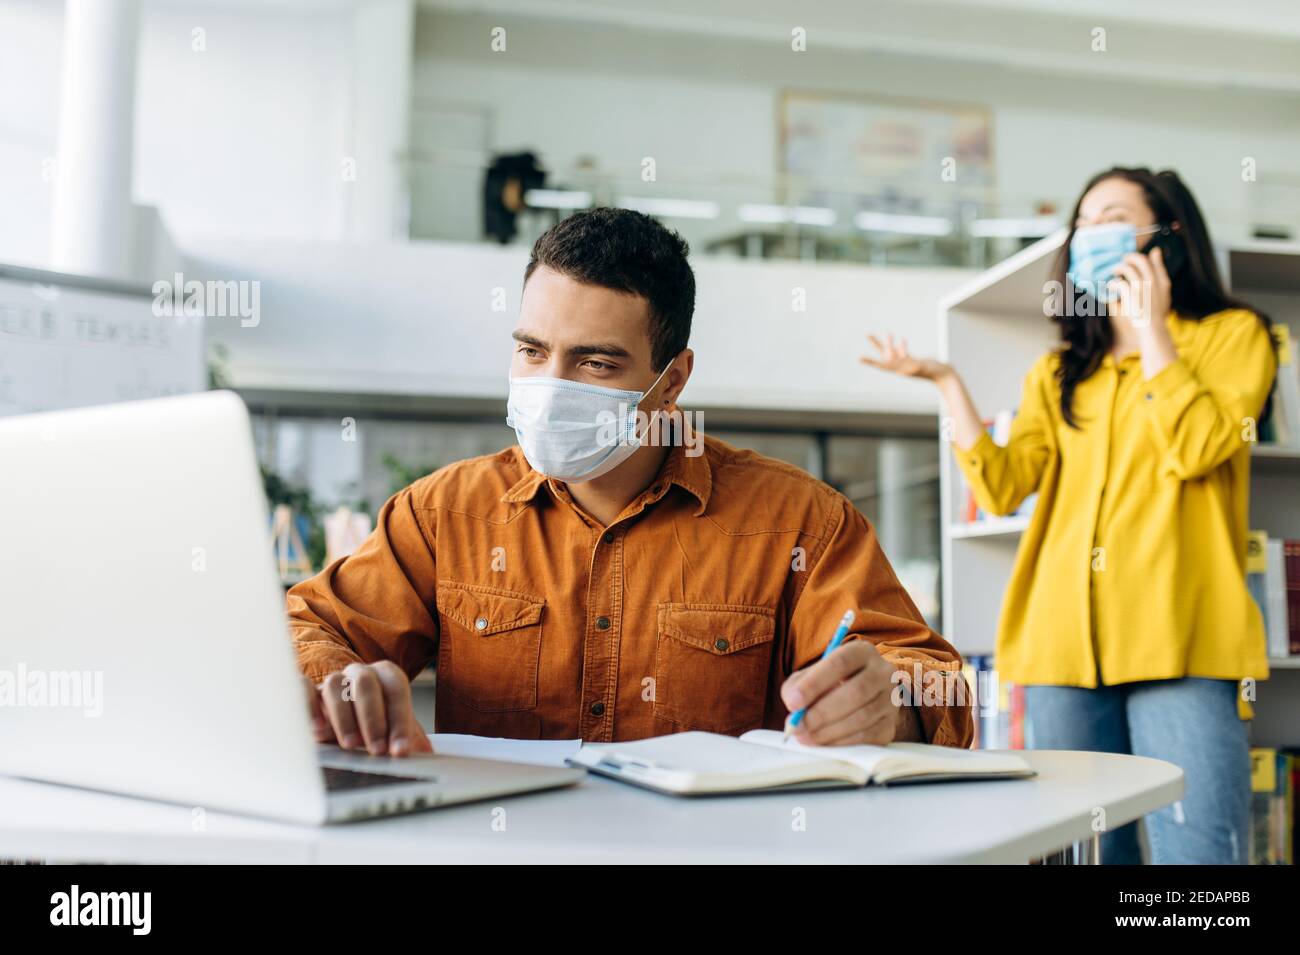 Erfolgreicher männlicher Manager oder Student mit Schutzmaske, arbeitet an einem Business-Projekt mit einem Laptop, im Hintergrund spricht ein Kollege am Telefon in einer Schutzmaske Stockfoto